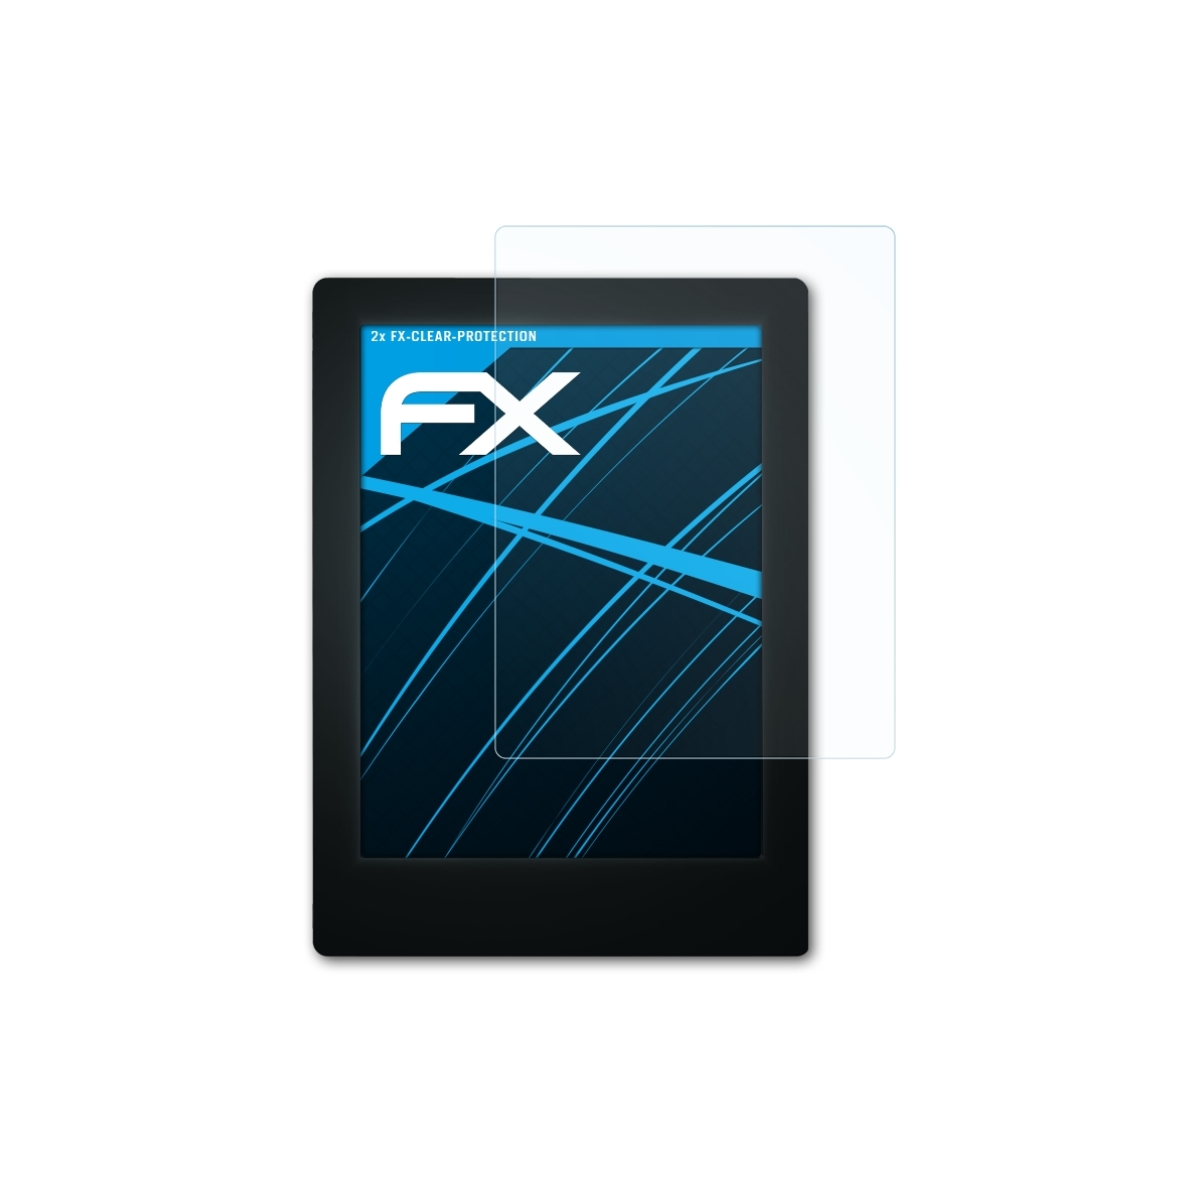 ATFOLIX 2x FX-Clear Displayschutz(für Aura) Kobo